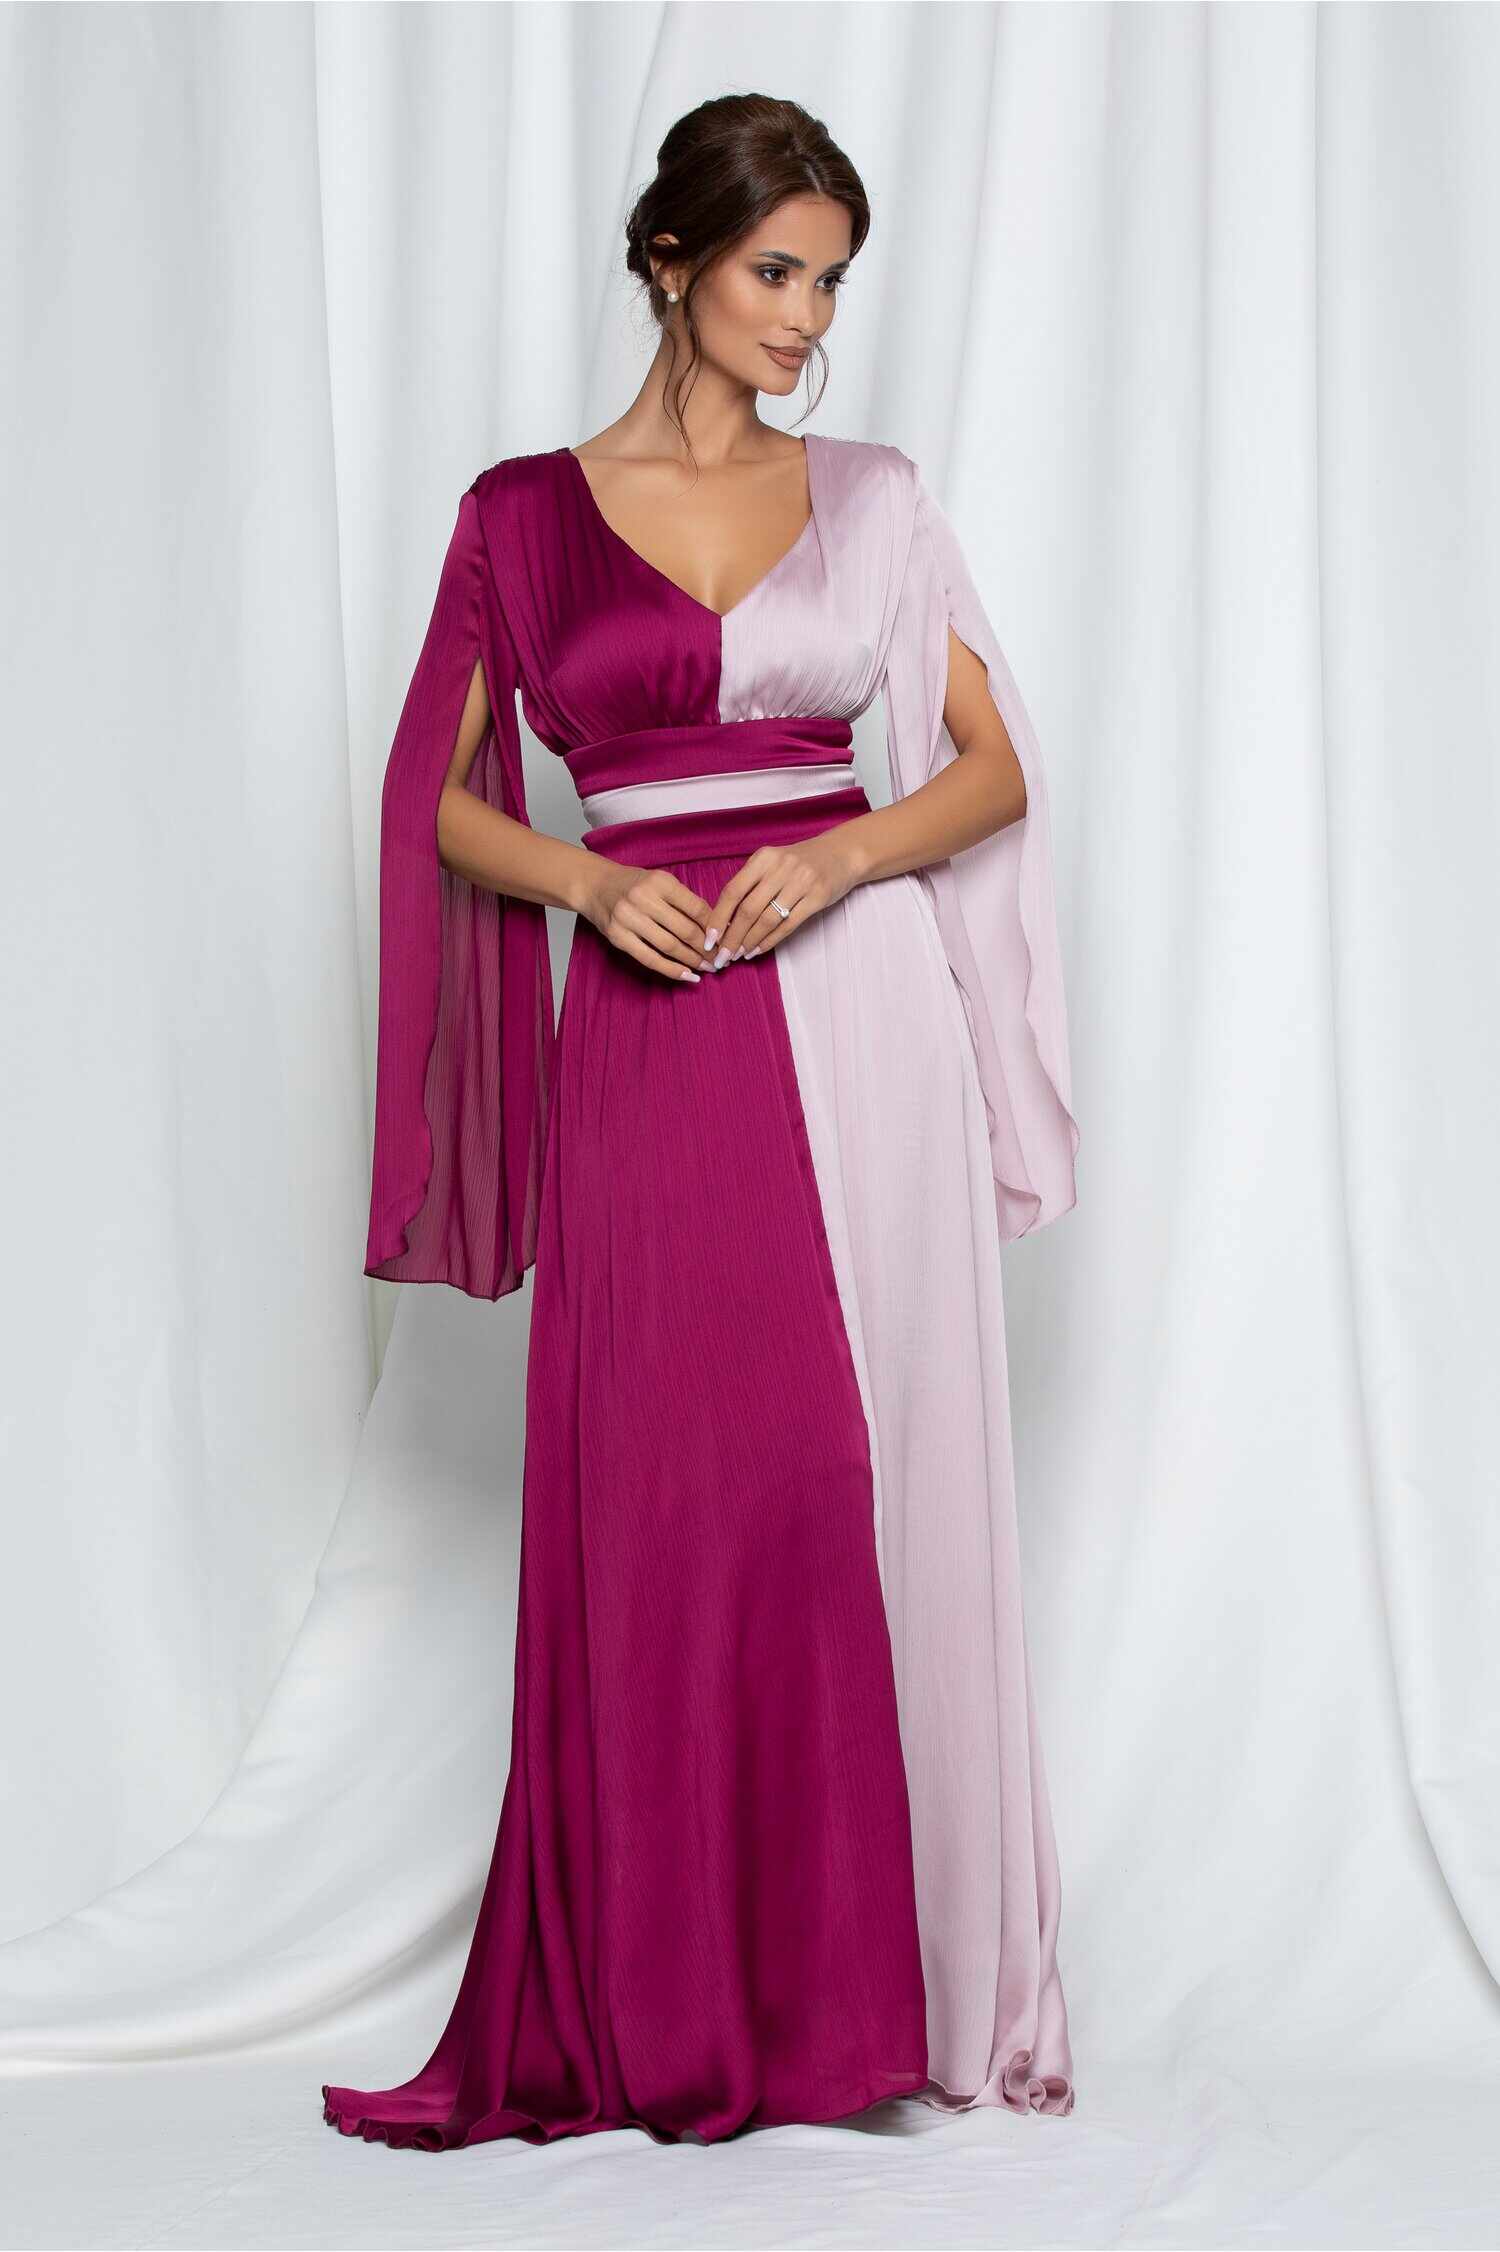 Rochie Ella Collection Diana in doua culori magenta si lila